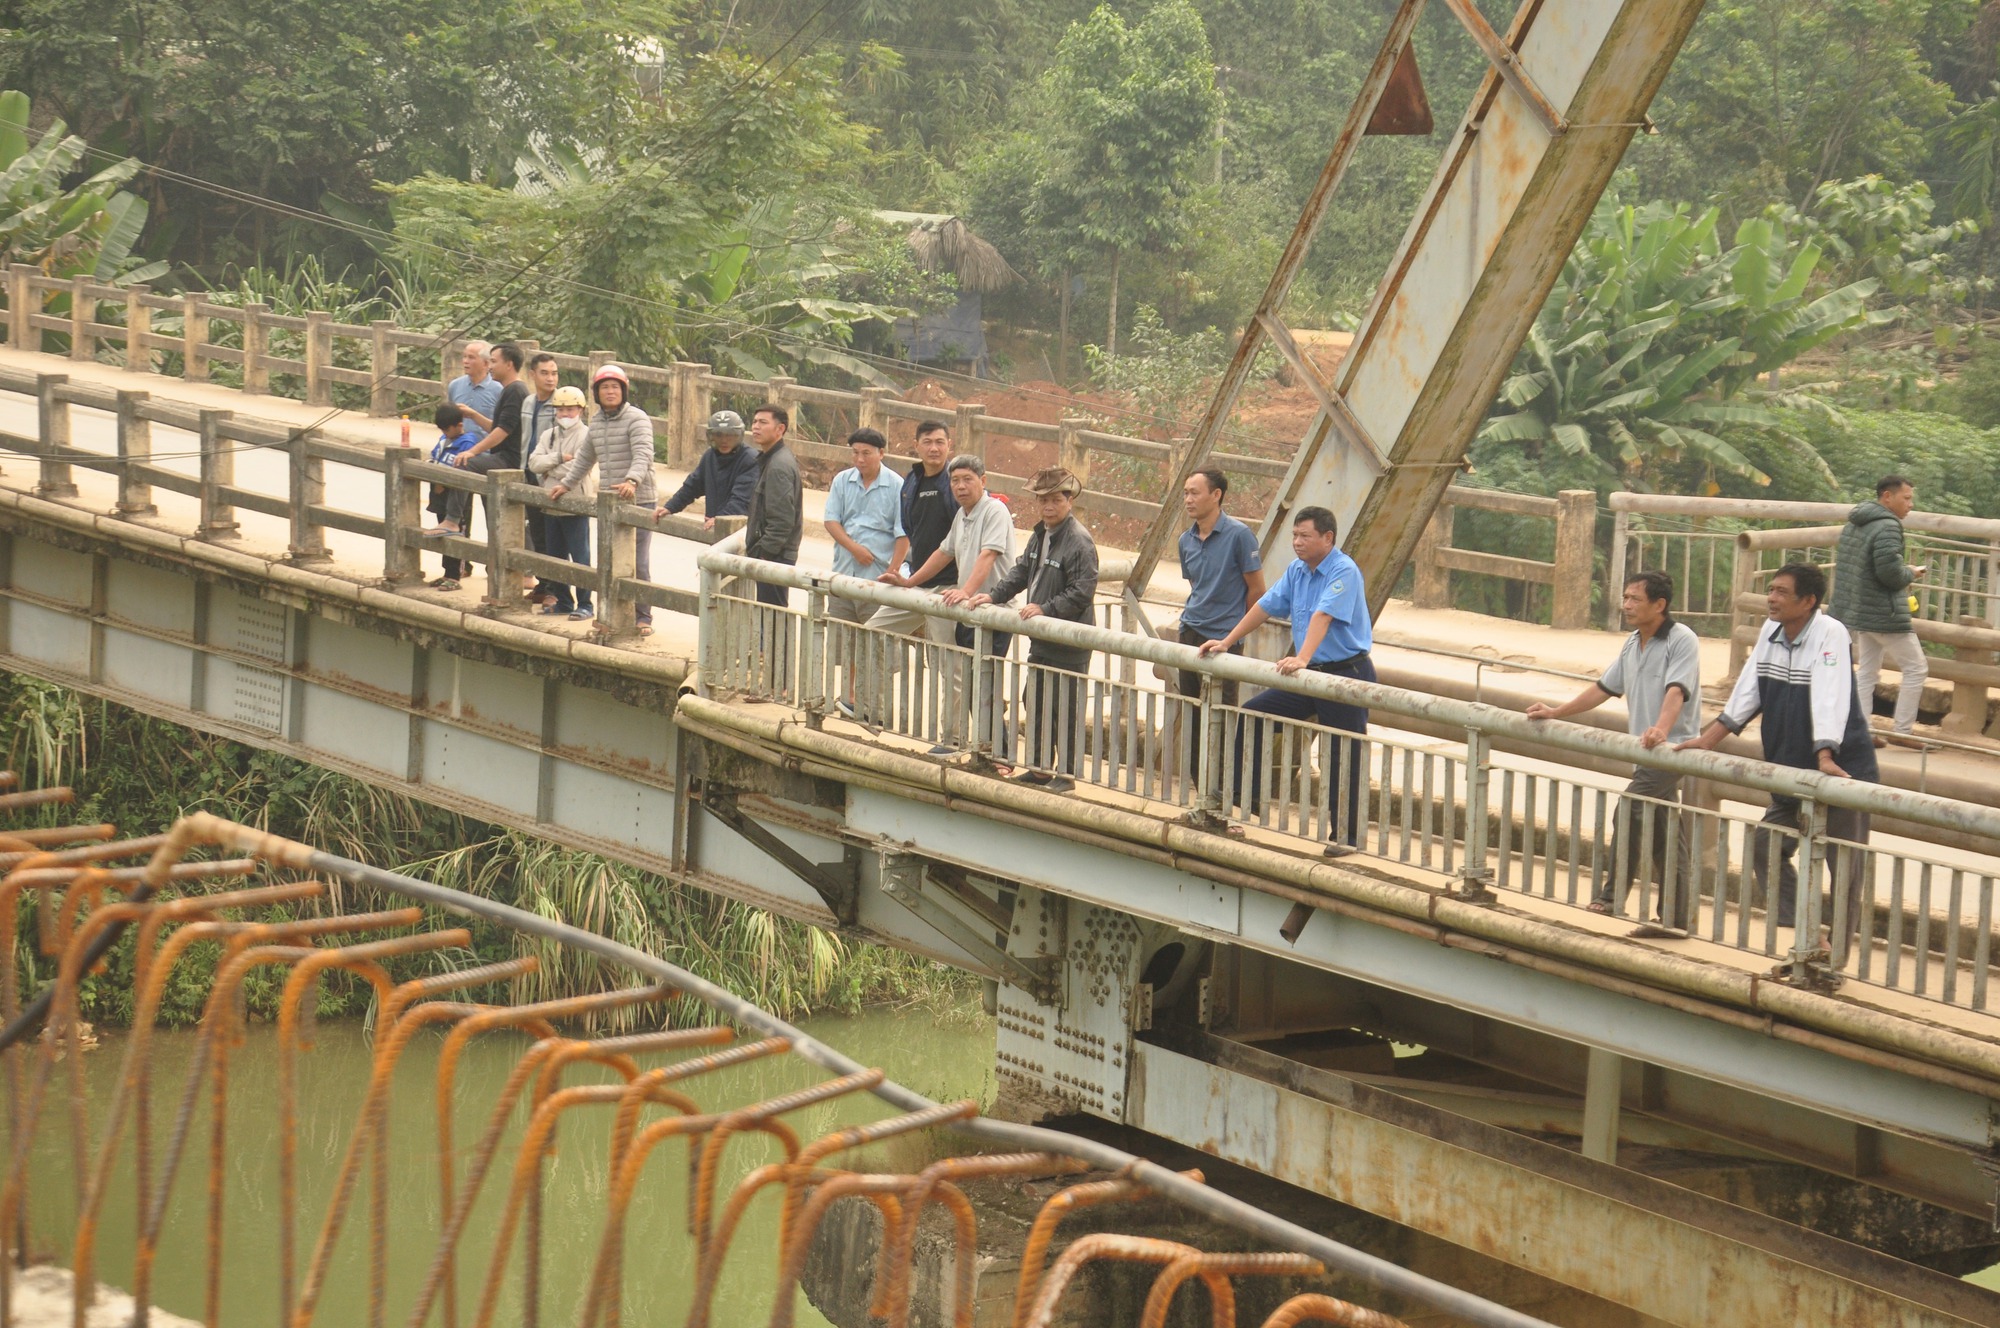 Hợp long cây cầu hơn 100 tỷ đồng bắc qua sông Chảy ở Yên Bái - Ảnh 11.